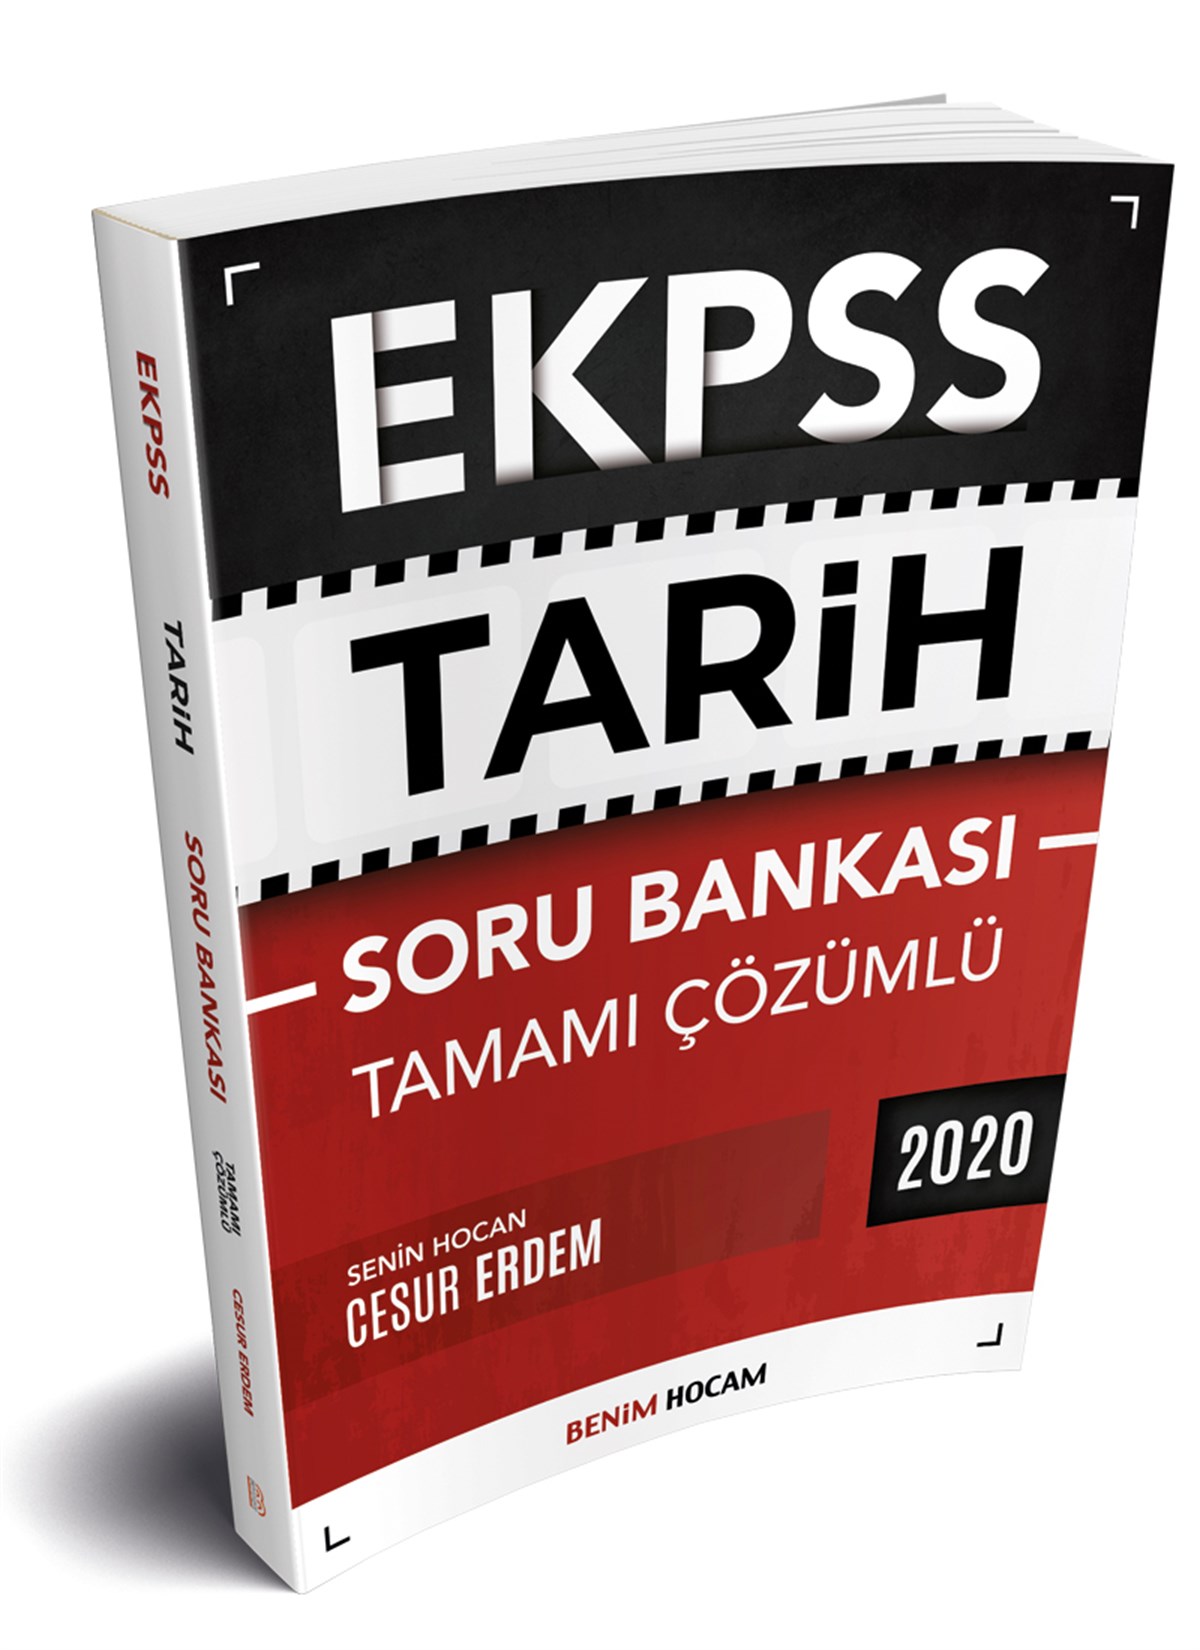 2020 E-KPSS Tarih Tamamı Çözümlü Soru Bankası Benim Hocam Yayınları